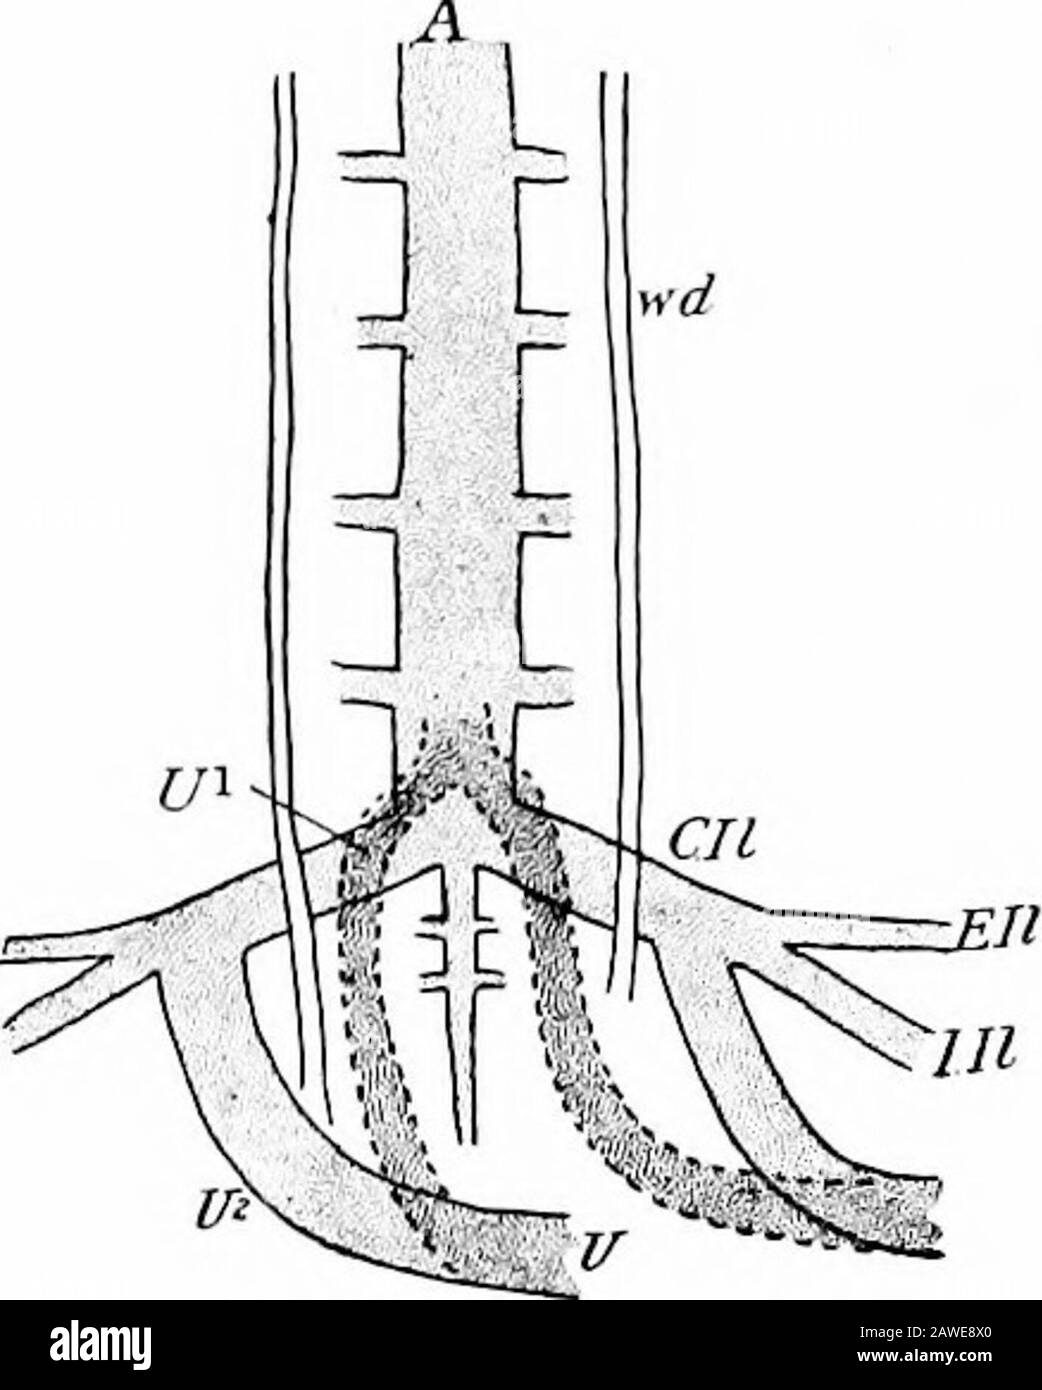 Lo sviluppo del corpo umano; un manuale di embriologia umana. Il primo rappresentante di loro è l'arteria mesenterica superiore, la cui origine dalla parte sinistra om-phalo-mesenterica è stata descritta. Diversi rami otherviscerali si verificano sia nei re-ioni toracici che addominali, ma sono irregolari nella distribuzione, gli unpairedbranches del re-gion addominale avendo probabilmente connessato da una originale condizione segmentale per formare canali composti come l'asse cceliaco e mesenterico inferiore. Una coppia di visceraldiramazioni, l'ombelicale Foto Stock